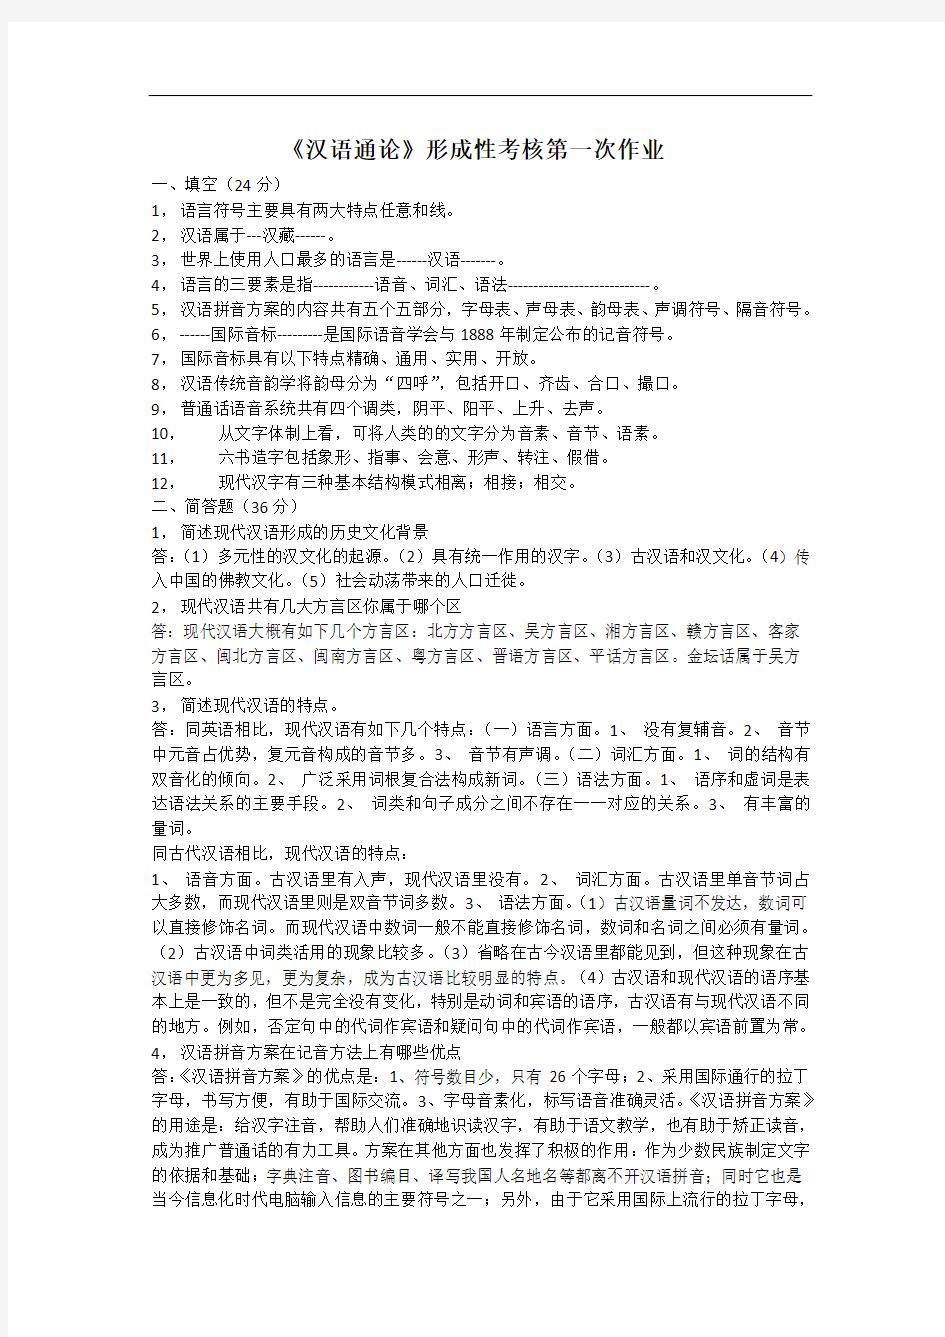 汉语通论形成性考核册(全)